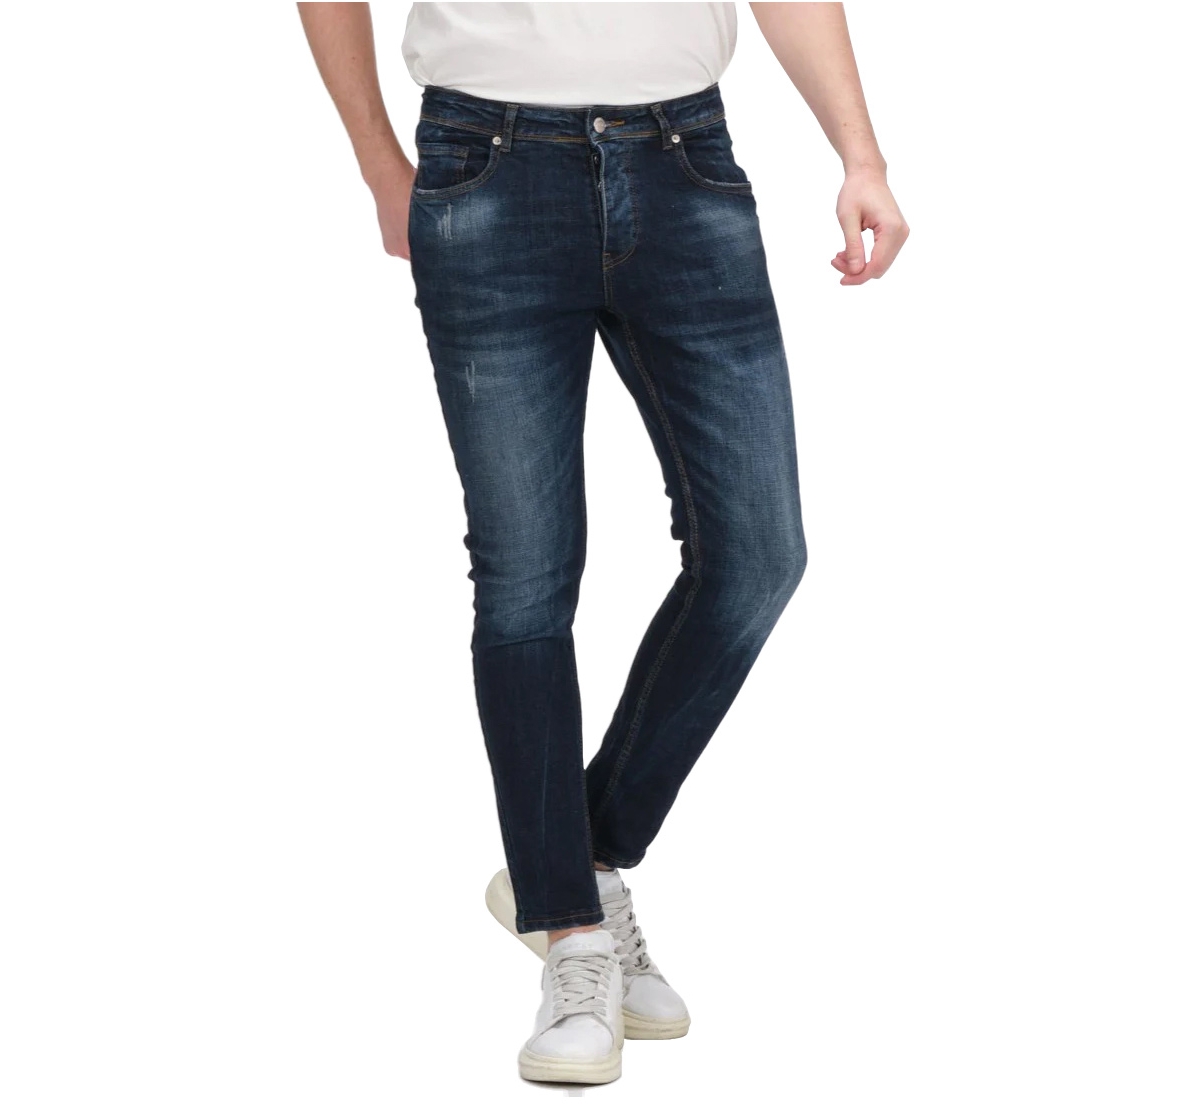 Men's Modern Faded Skinny Jeans - Dark Blue